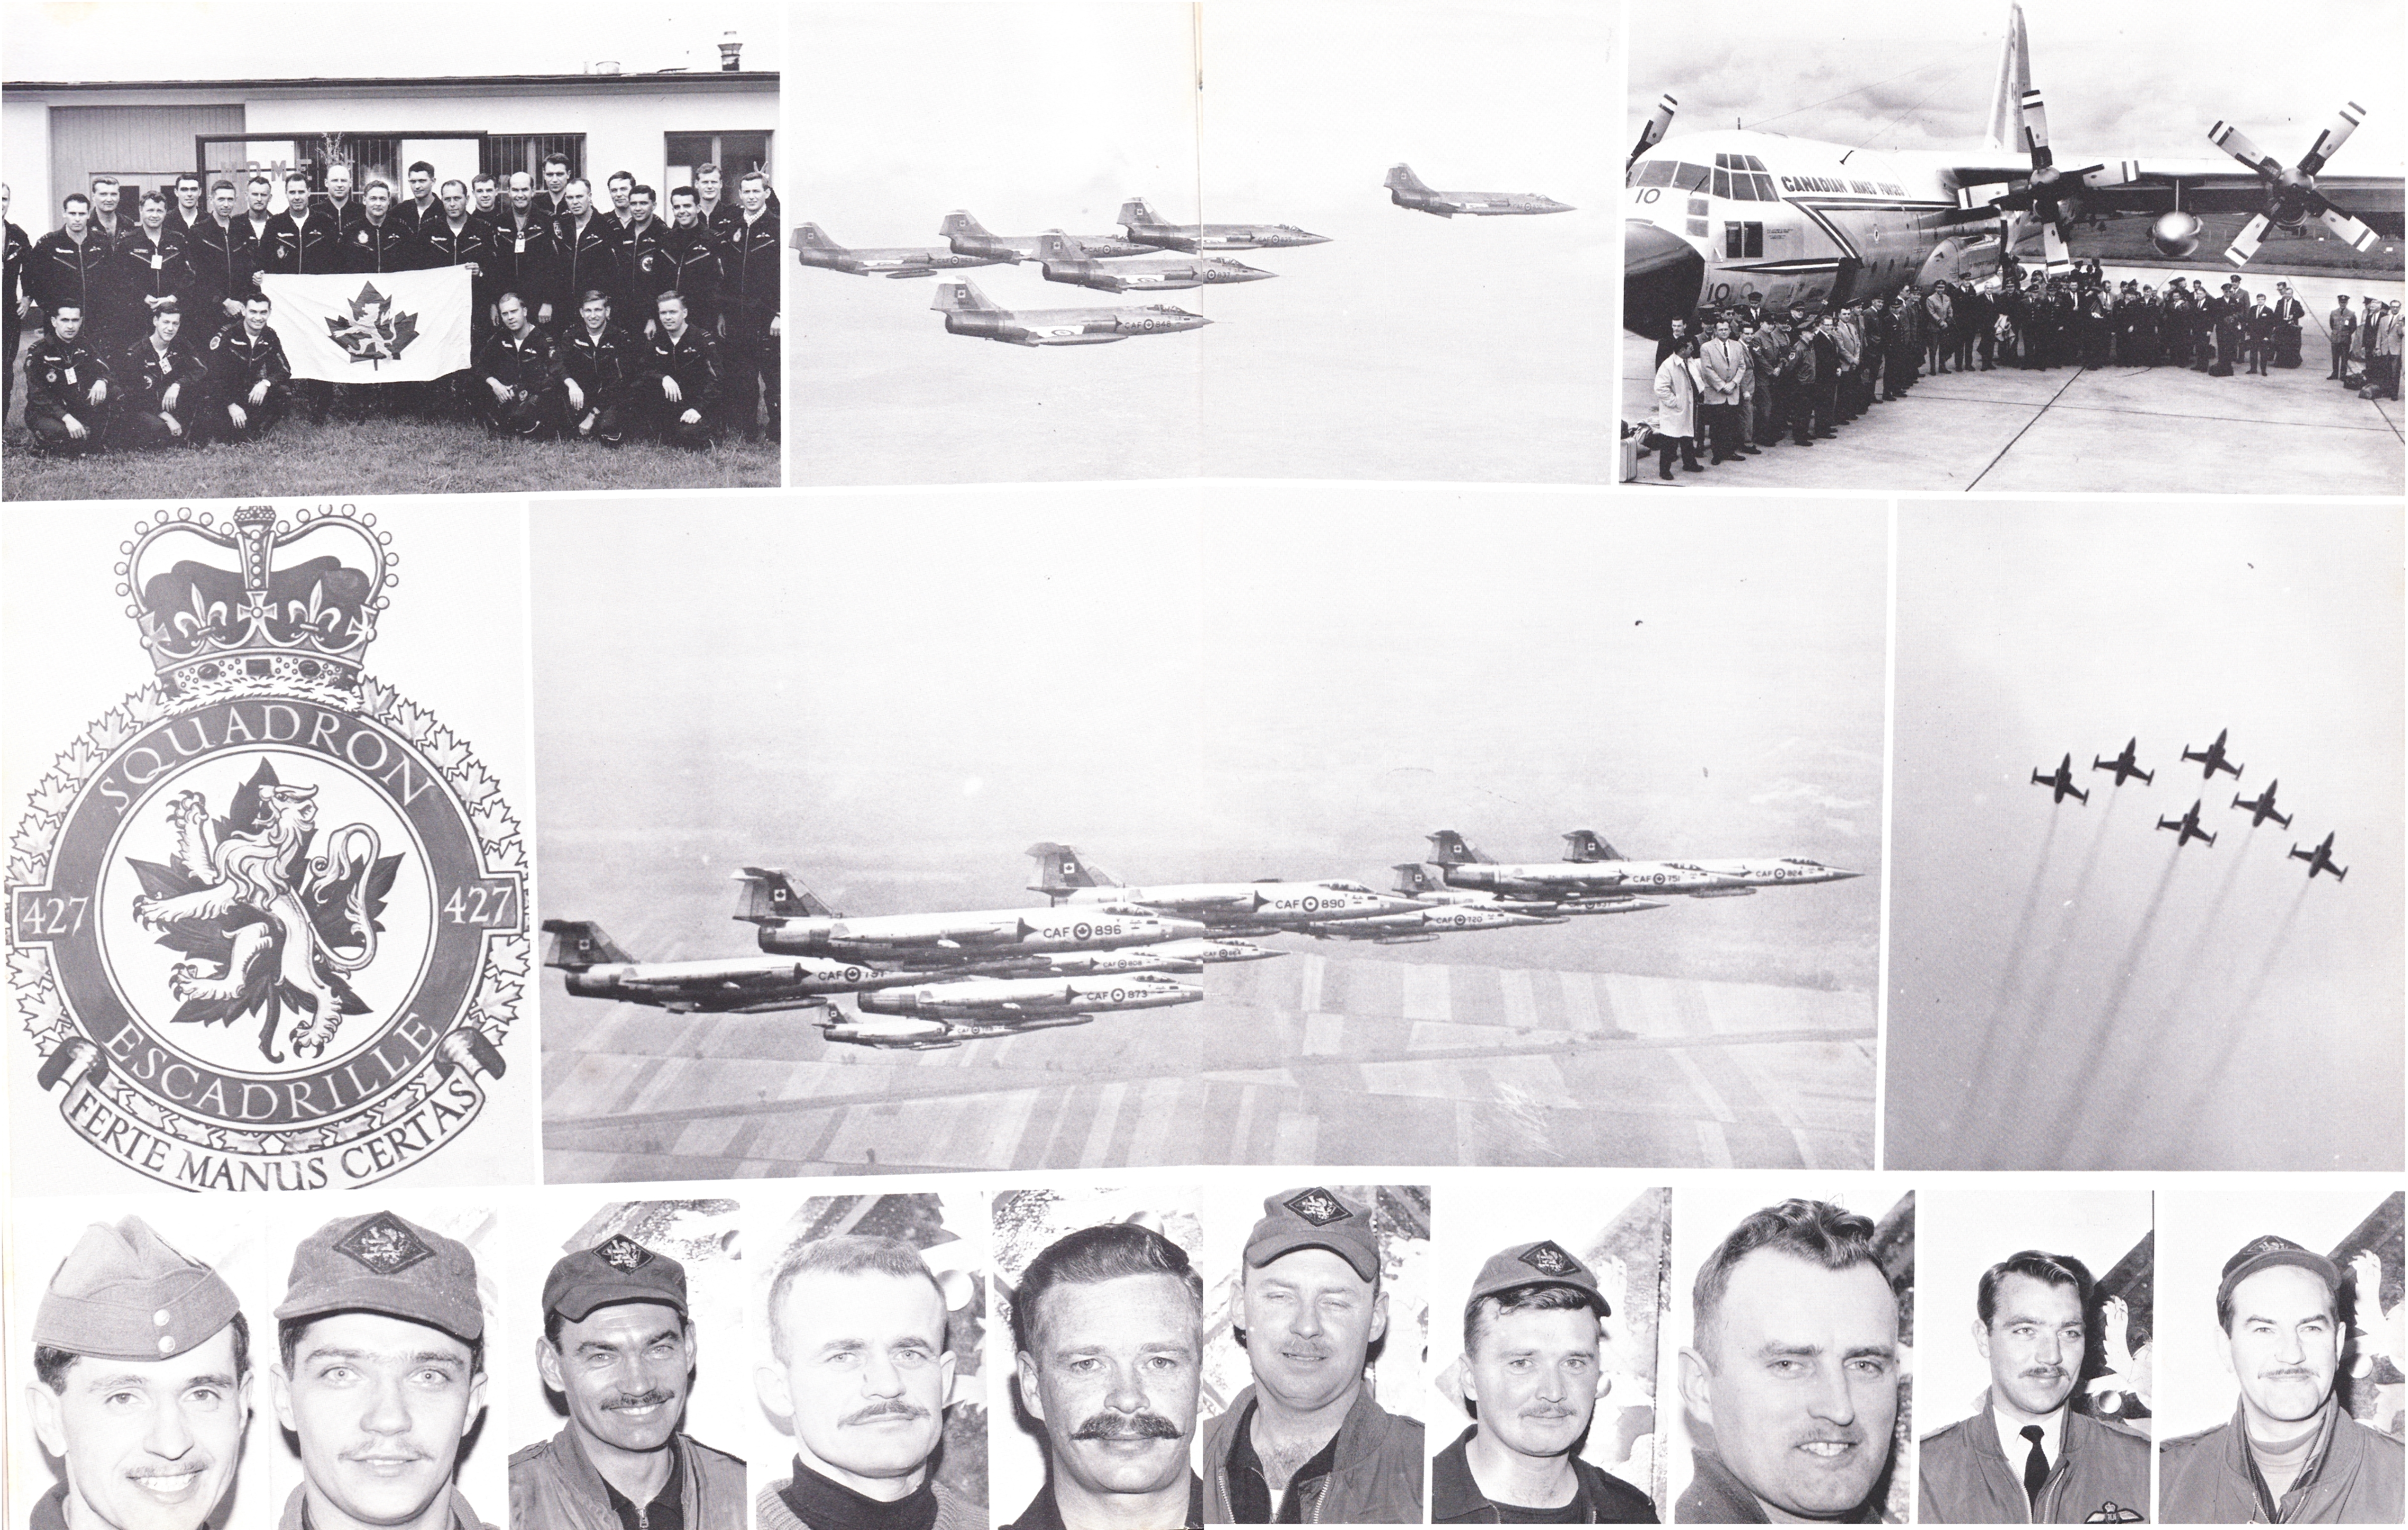 CF-104 Squadron Diary